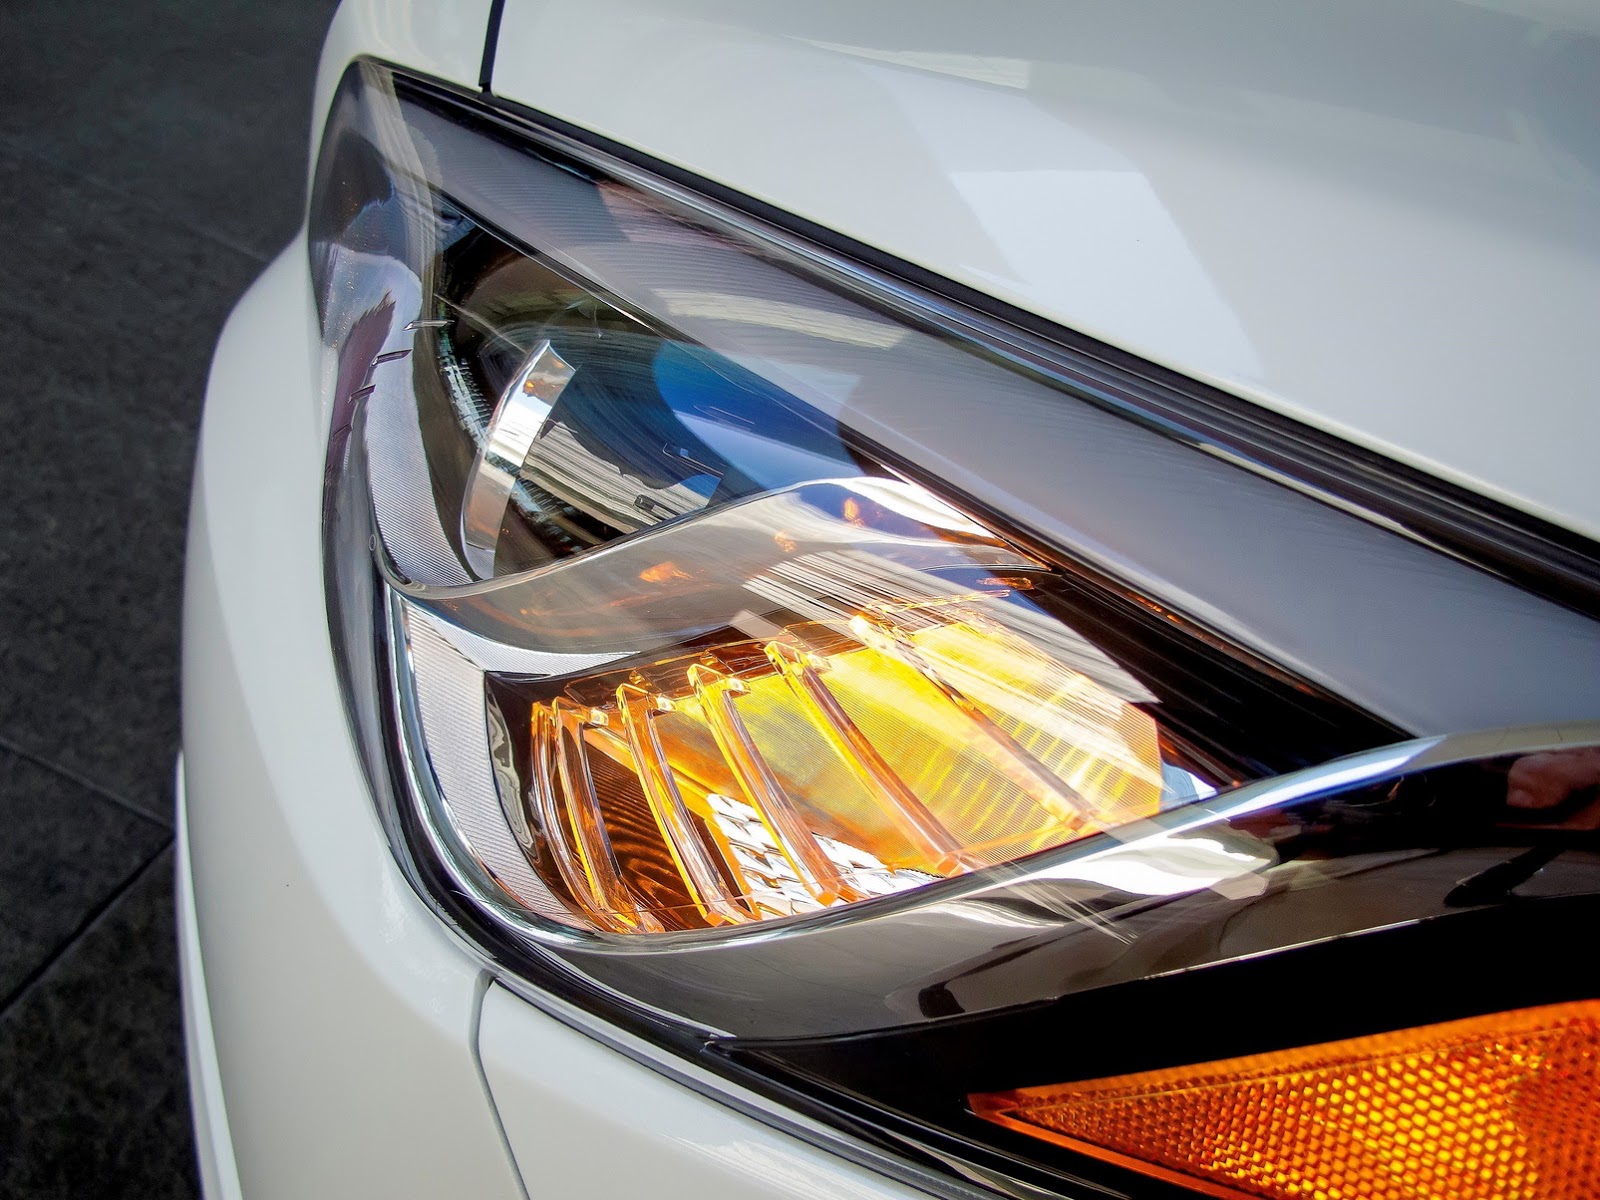 
Ở phiên bản mới, Hyundai Sonata được trang bị 3 tùy chọn động cơ, nhiều công nghệ hiện đại hơn và đèn pha bẻ theo góc cua linh hoạt.
